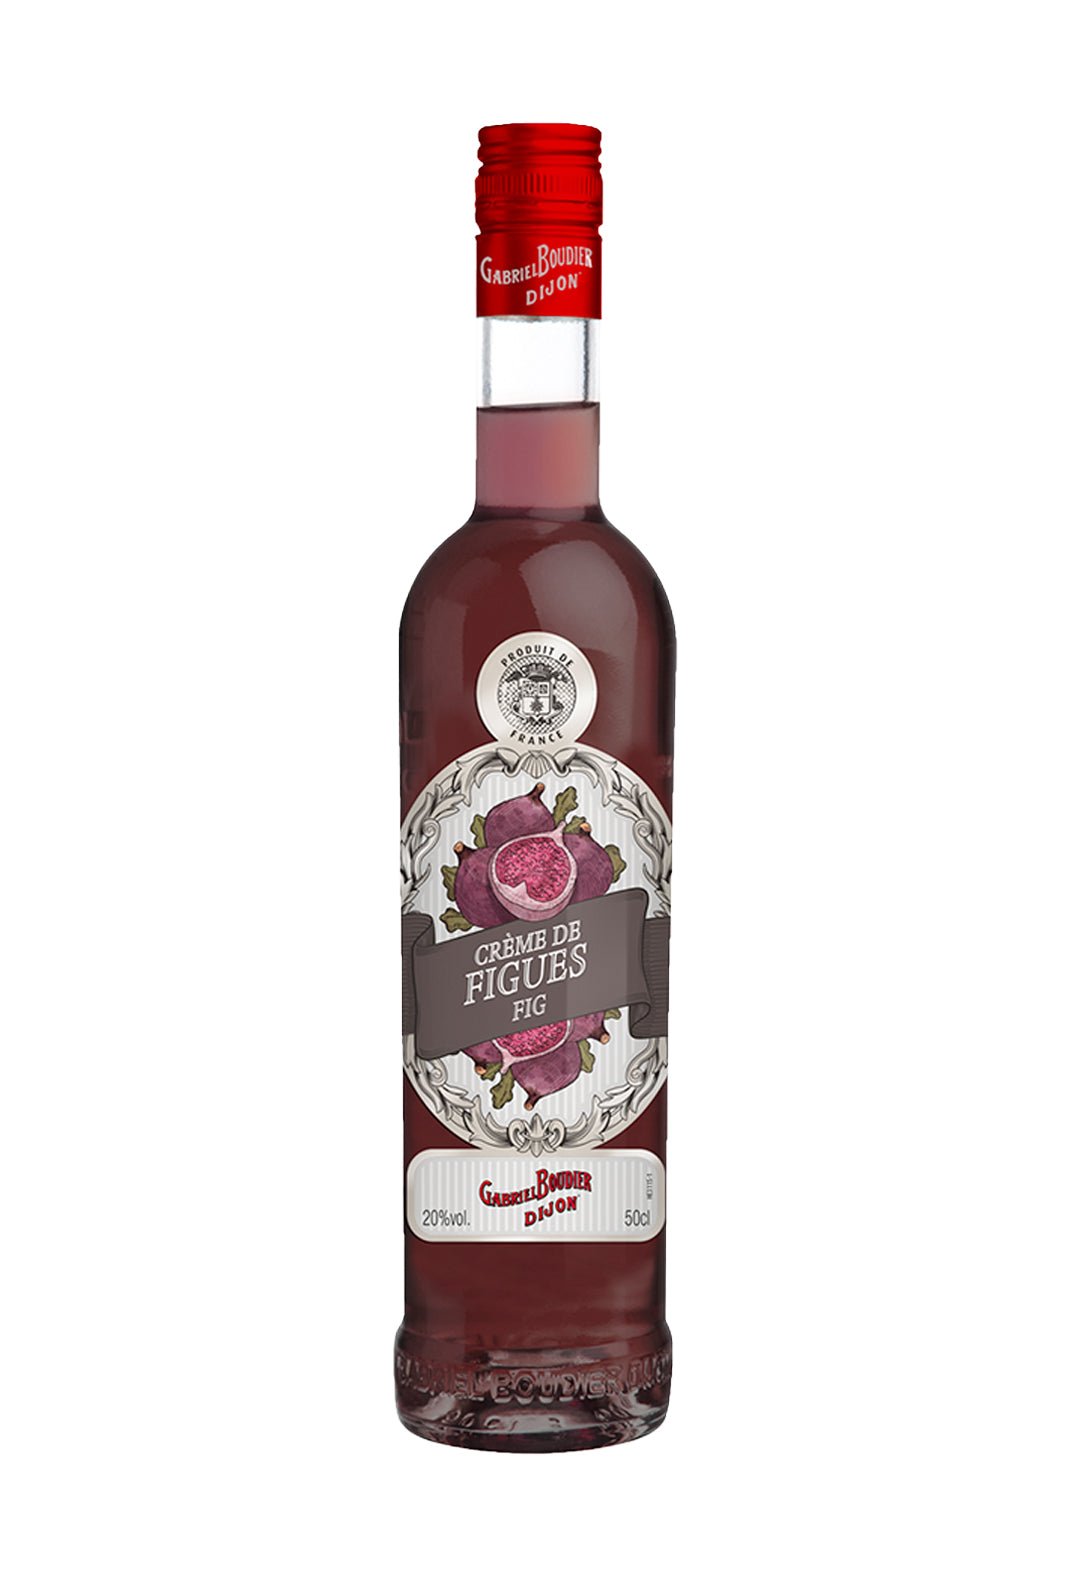 Gabriel Boudier Fig (Figue) Liqueur 20% 500ml | Liqueurs | Shop online at Spirits of France